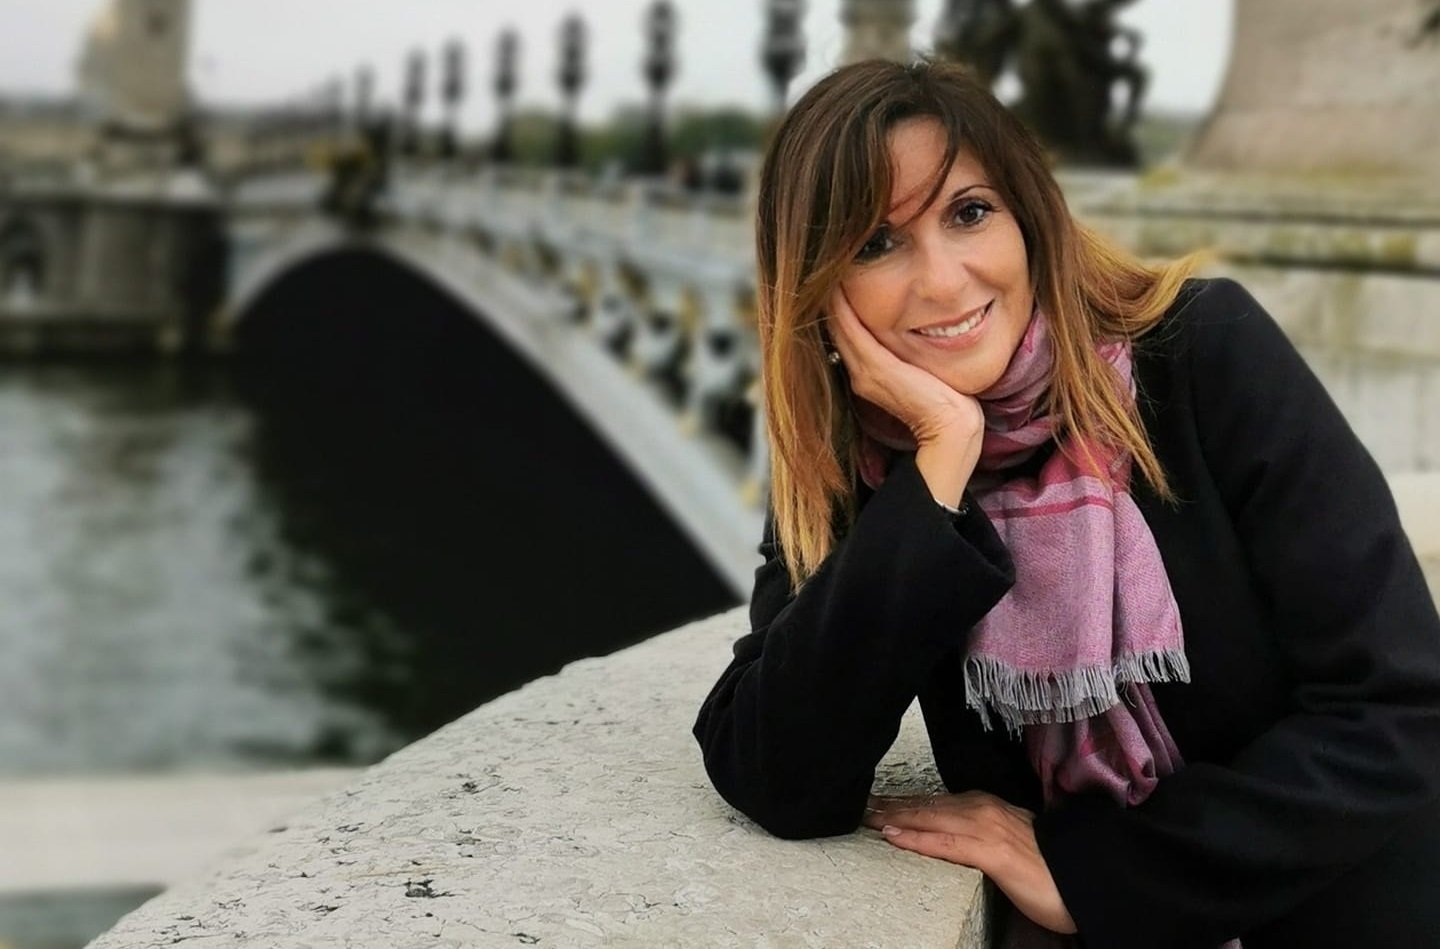 Novi Ligure e Confagricoltura piangono la scomparsa improvvisa di Sonia Merlo